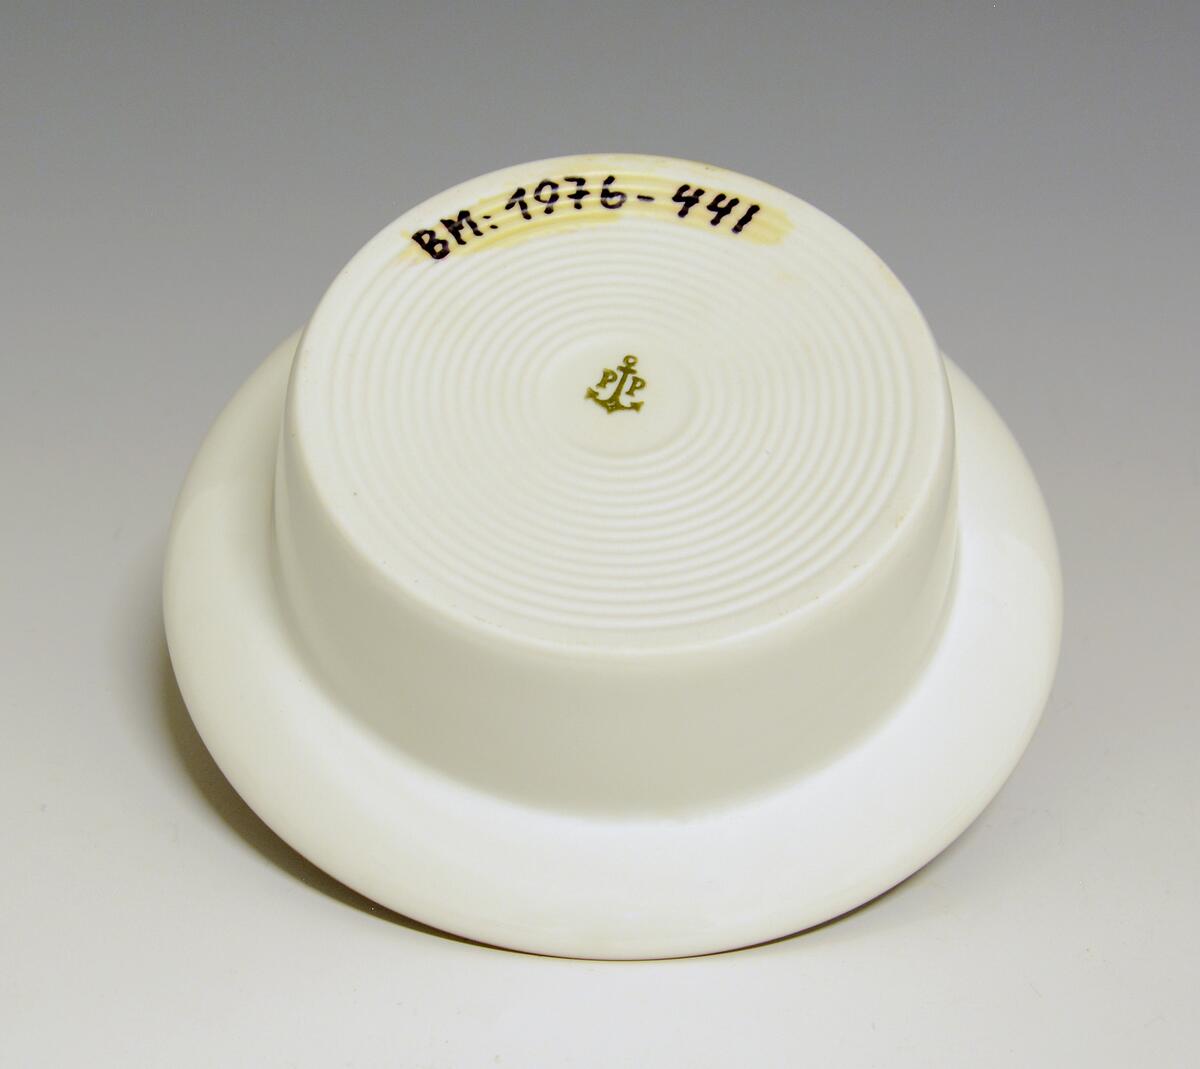 Prot: Dyp, liten tallerken, dessertskål. "Eystein". Modell 2440, dekor: 80045, Saga. Høy, smalner av mot bunnen. Design Eystein Sandnes. Lansert i 1970.